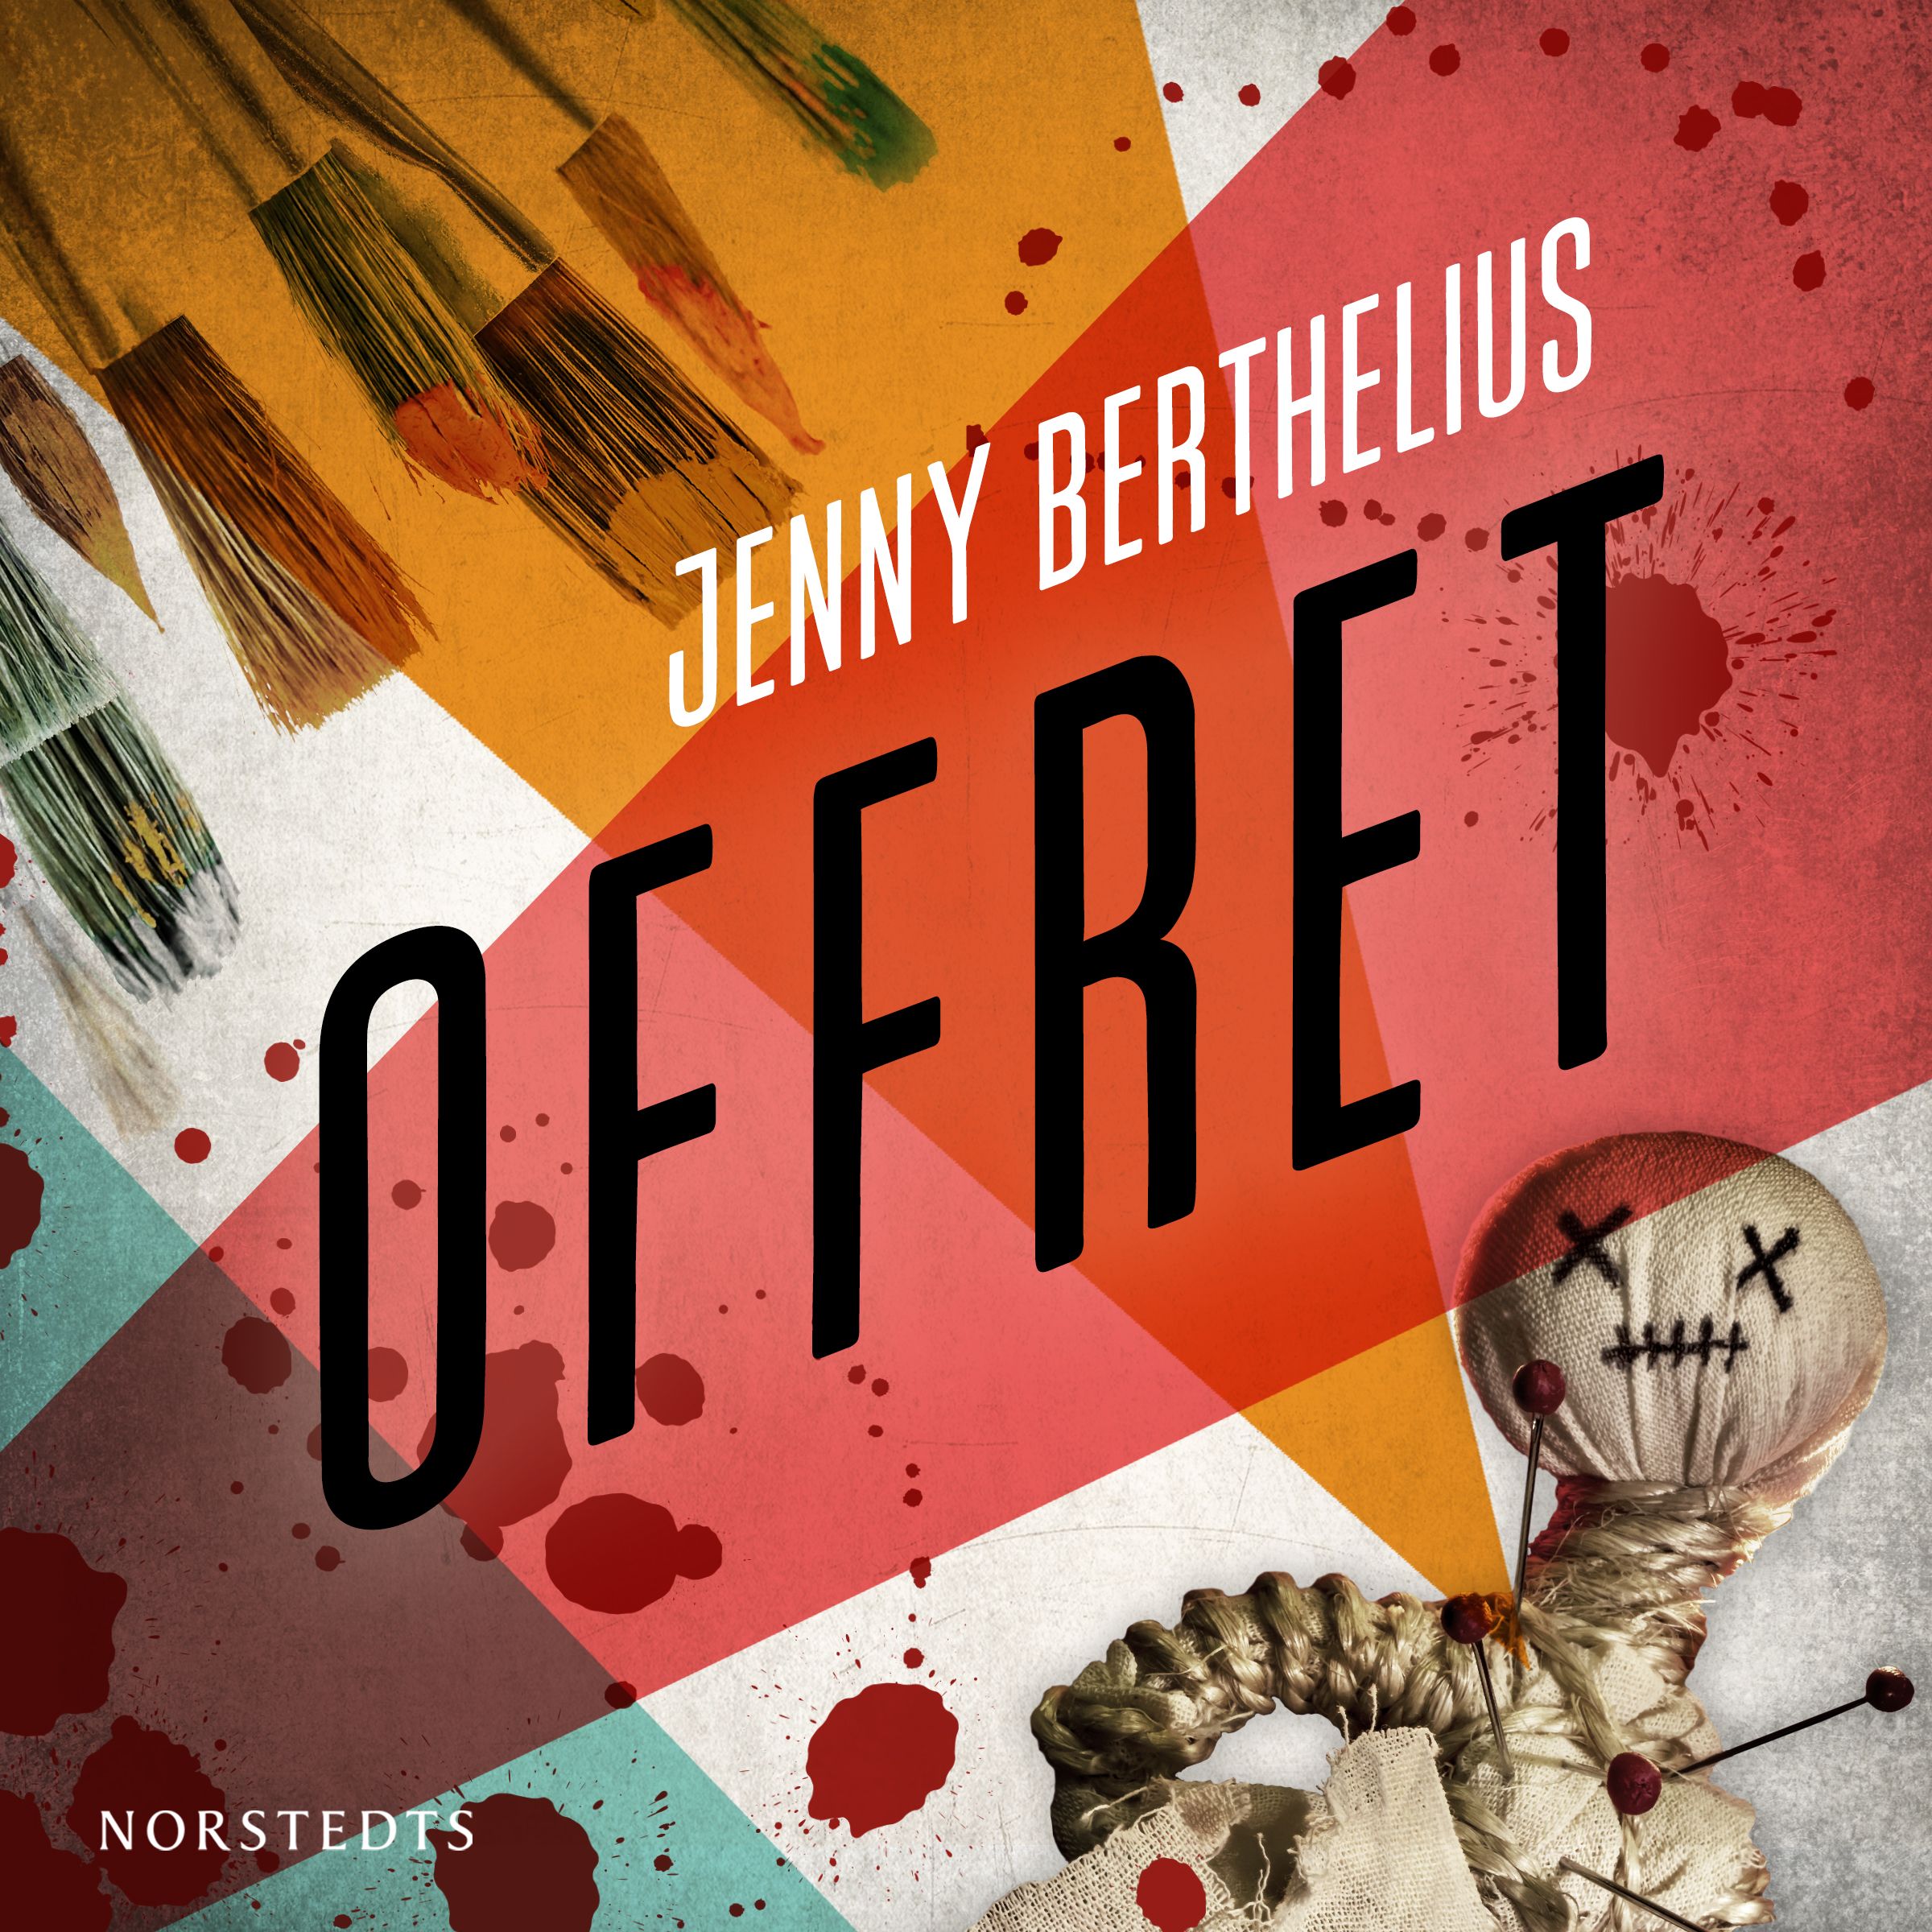 Offret, lydbog af Jenny Berthelius